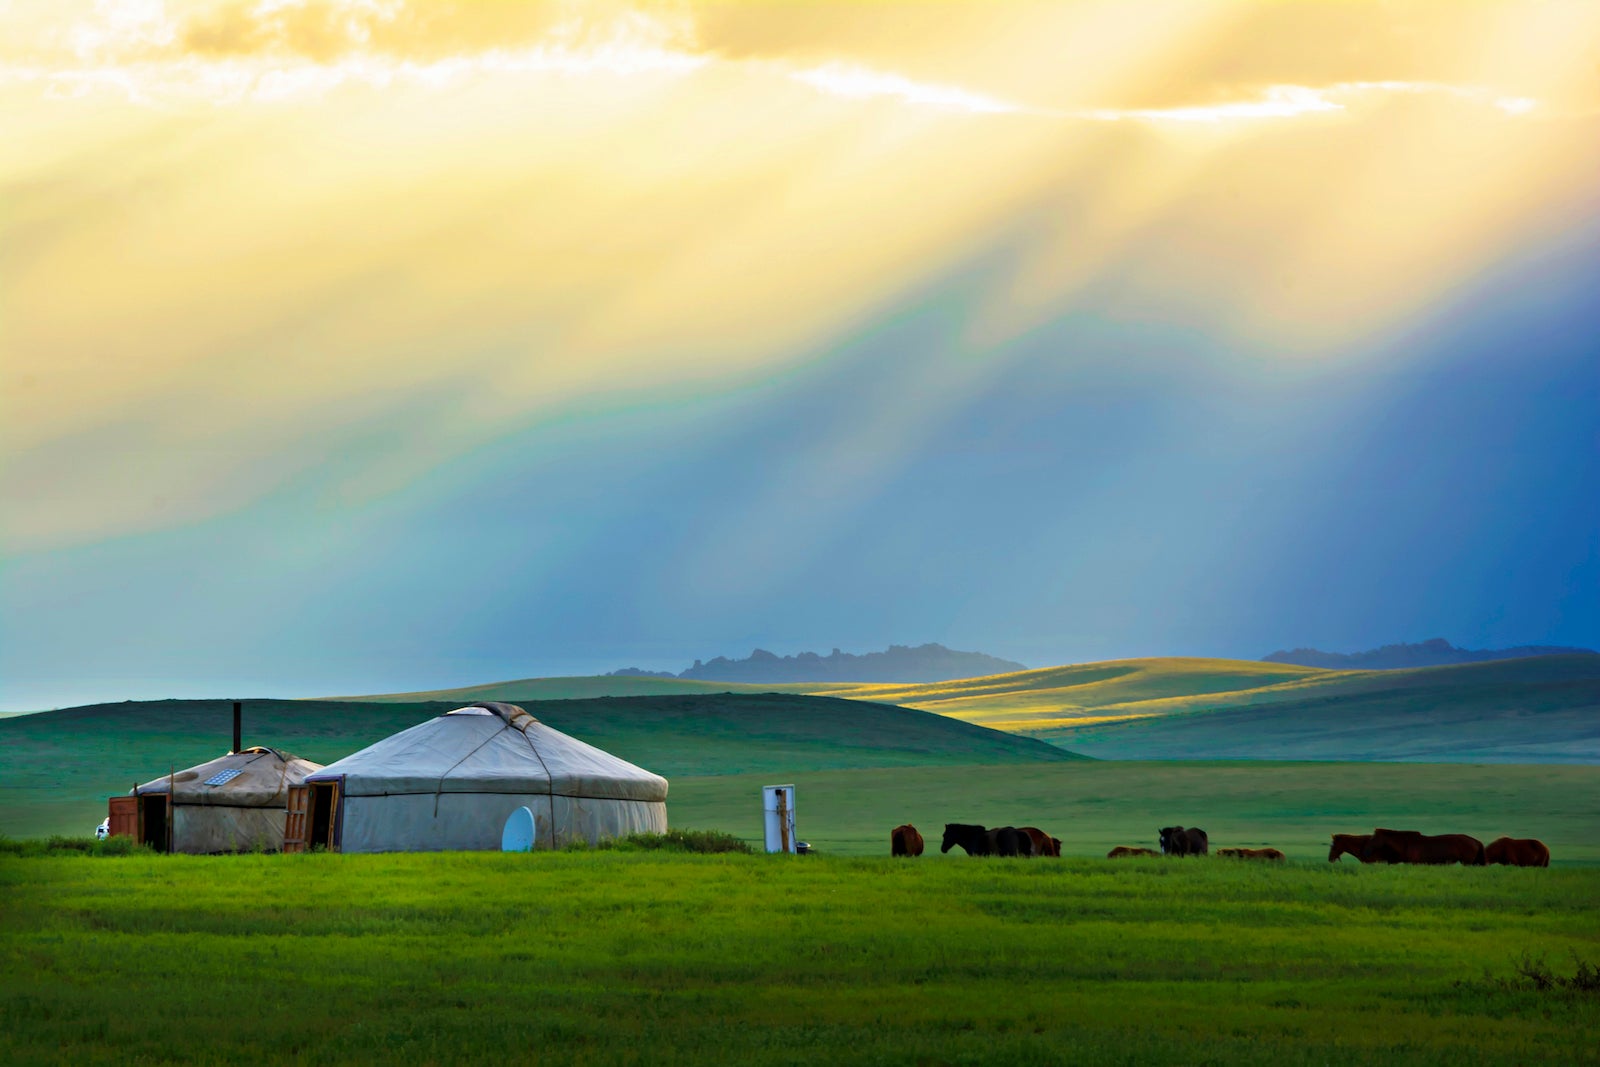 Beautiful sunset in Mongolia.